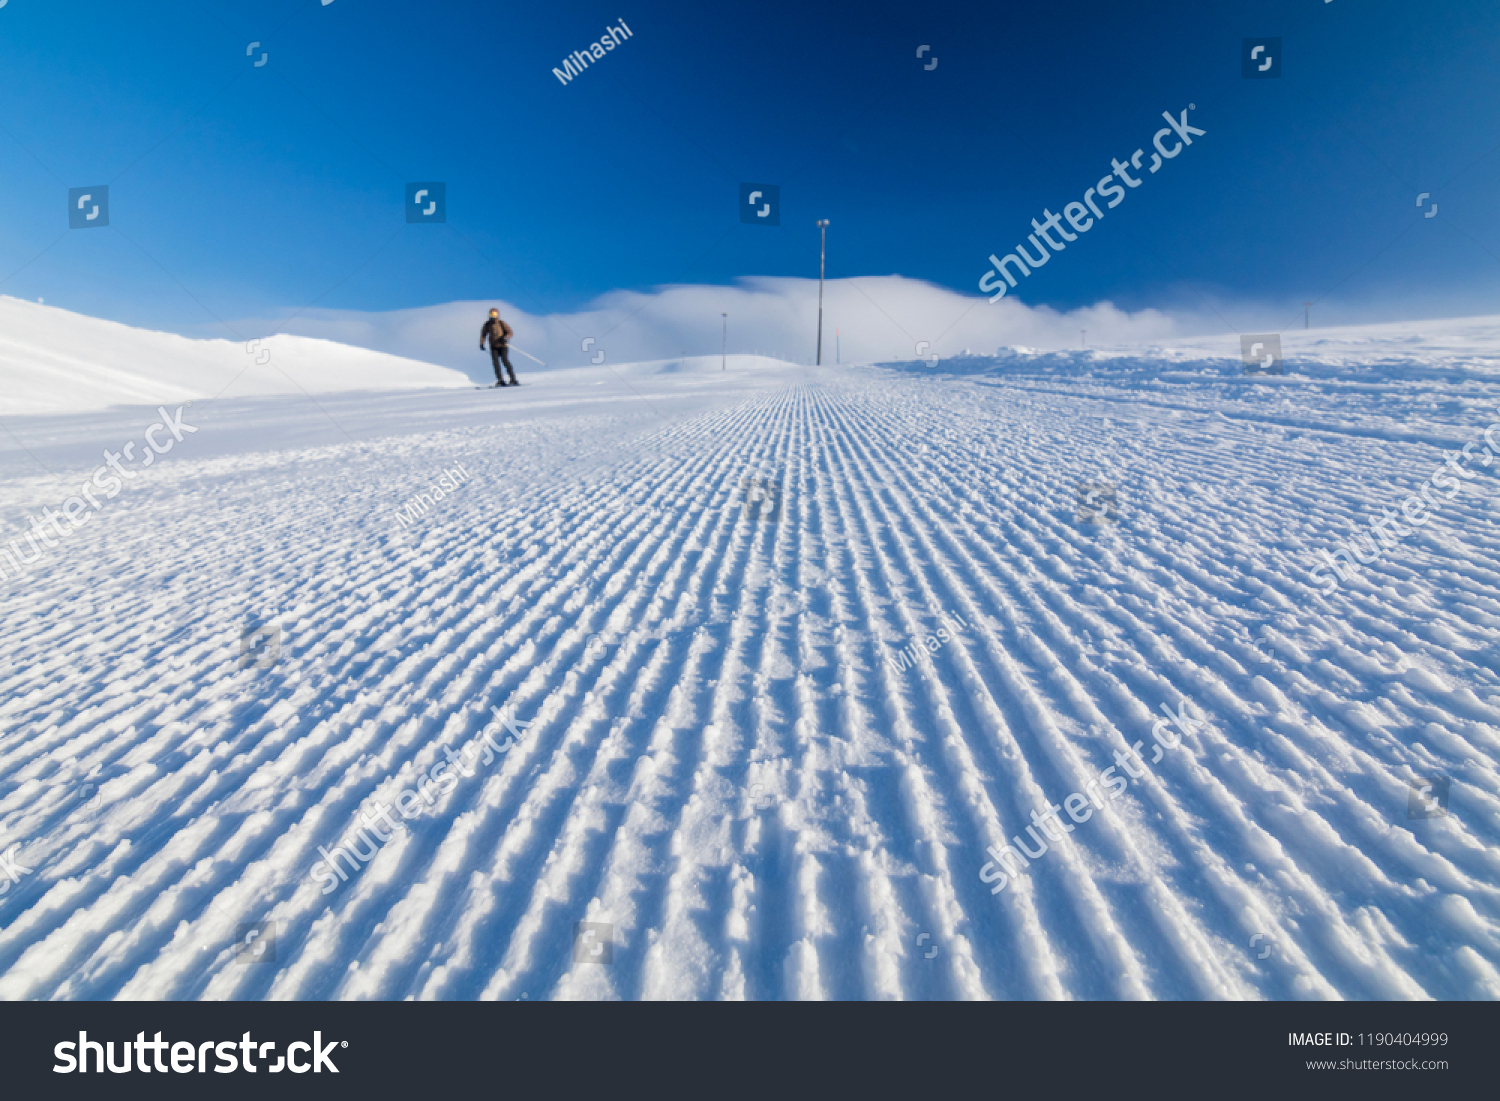 alpine skier on a fresh ski slope #1190404999